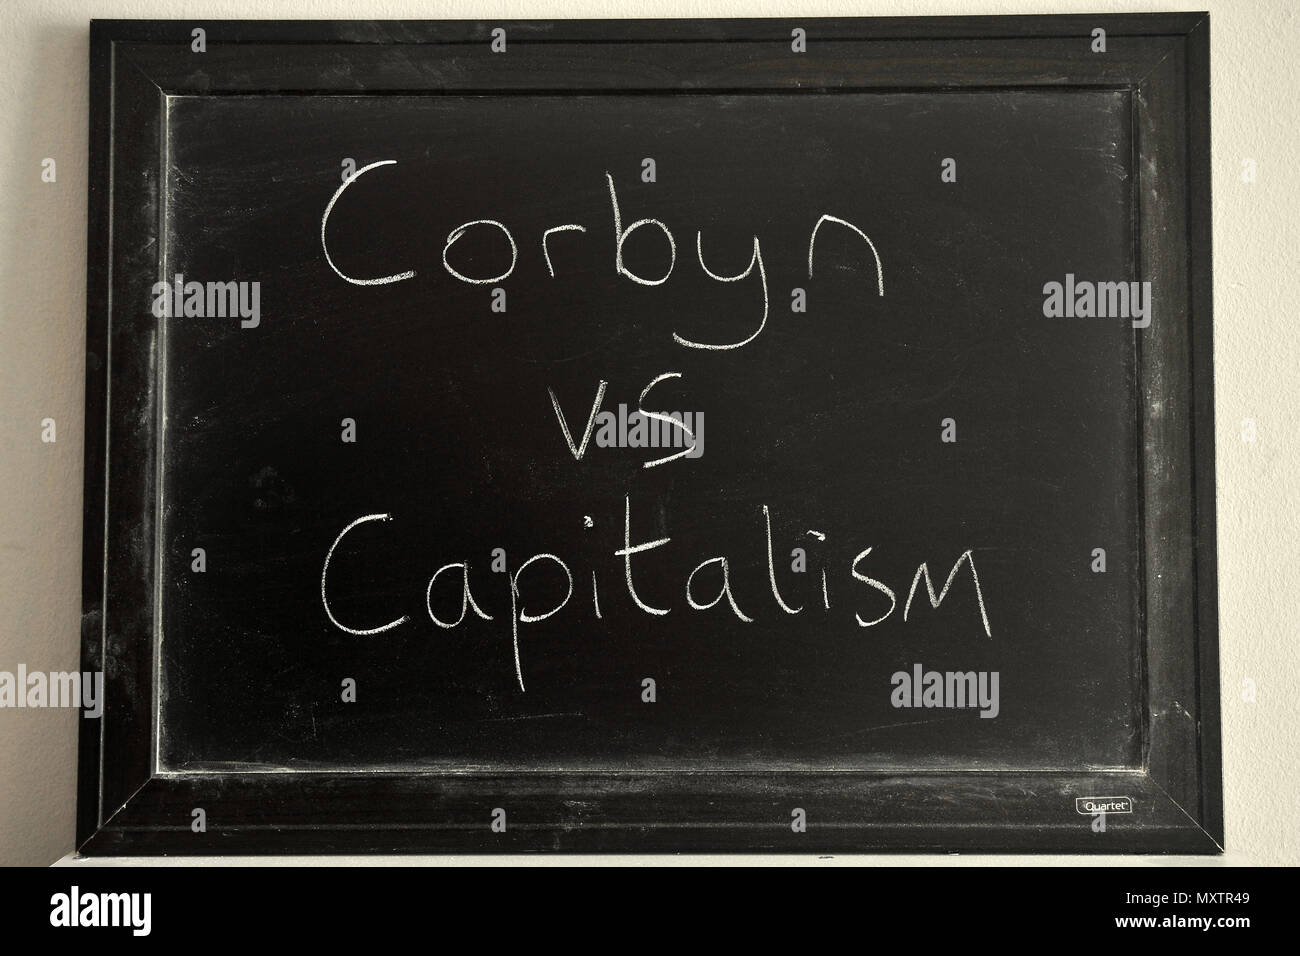 Corbyn vs capitalismo escritas en blanco tiza en una pizarra. Foto de stock